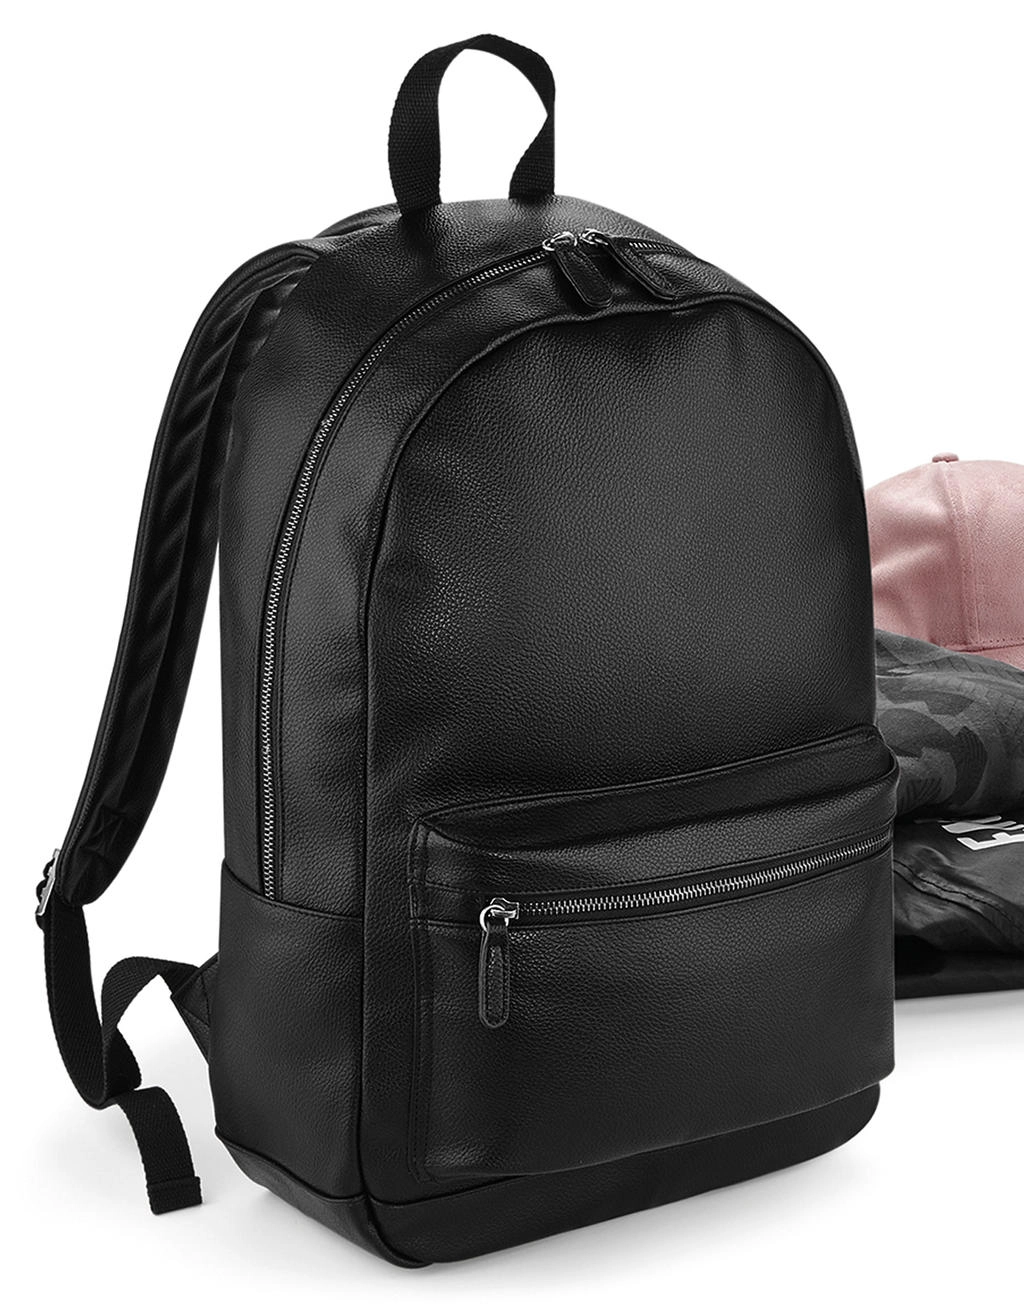 Faux Leather Fashion Backpack zum Besticken und Bedrucken mit Ihren Logo, Schriftzug oder Motiv.